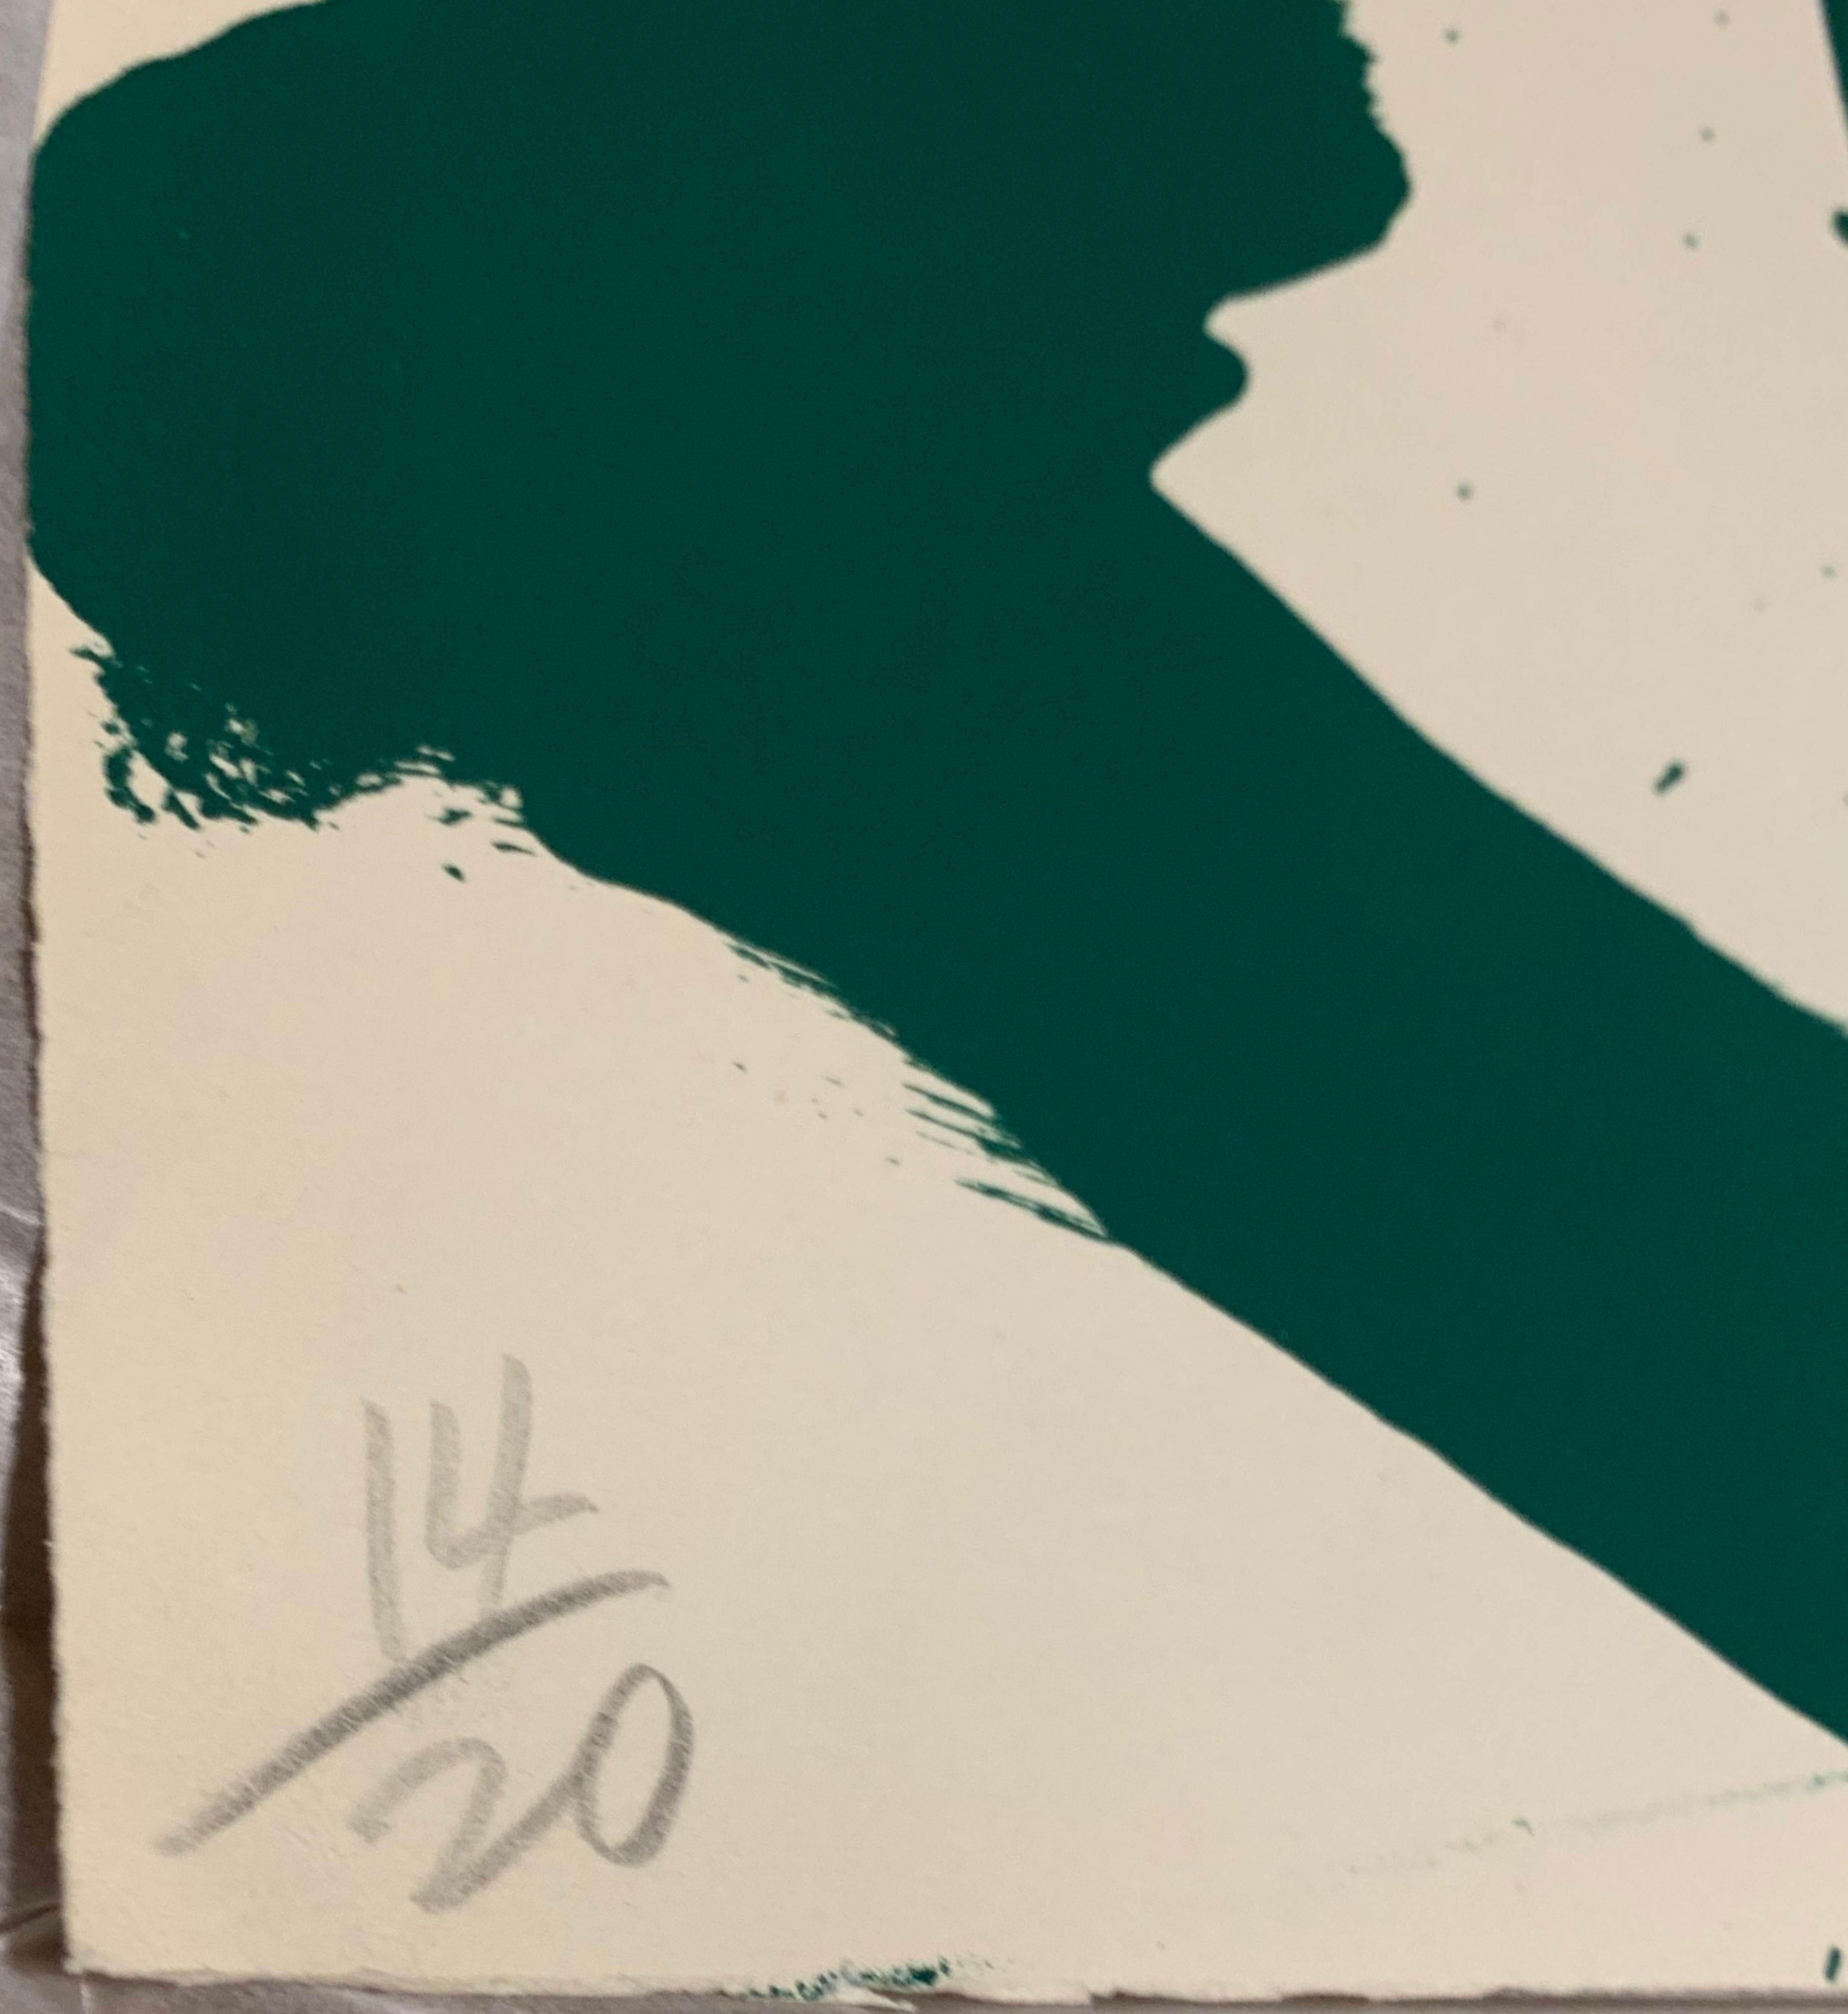 WALASSE TING
Bombe verte, 1964
Lithographie couleur sur papier Rives BFK
28 × 38 pouces
Signée et numérotée 14/20 au crayon graphite au recto.
Publié par : Tamarind Institute, USA
Non encadré
Provenance : Anderson Gallery, Buffalo, New York. David